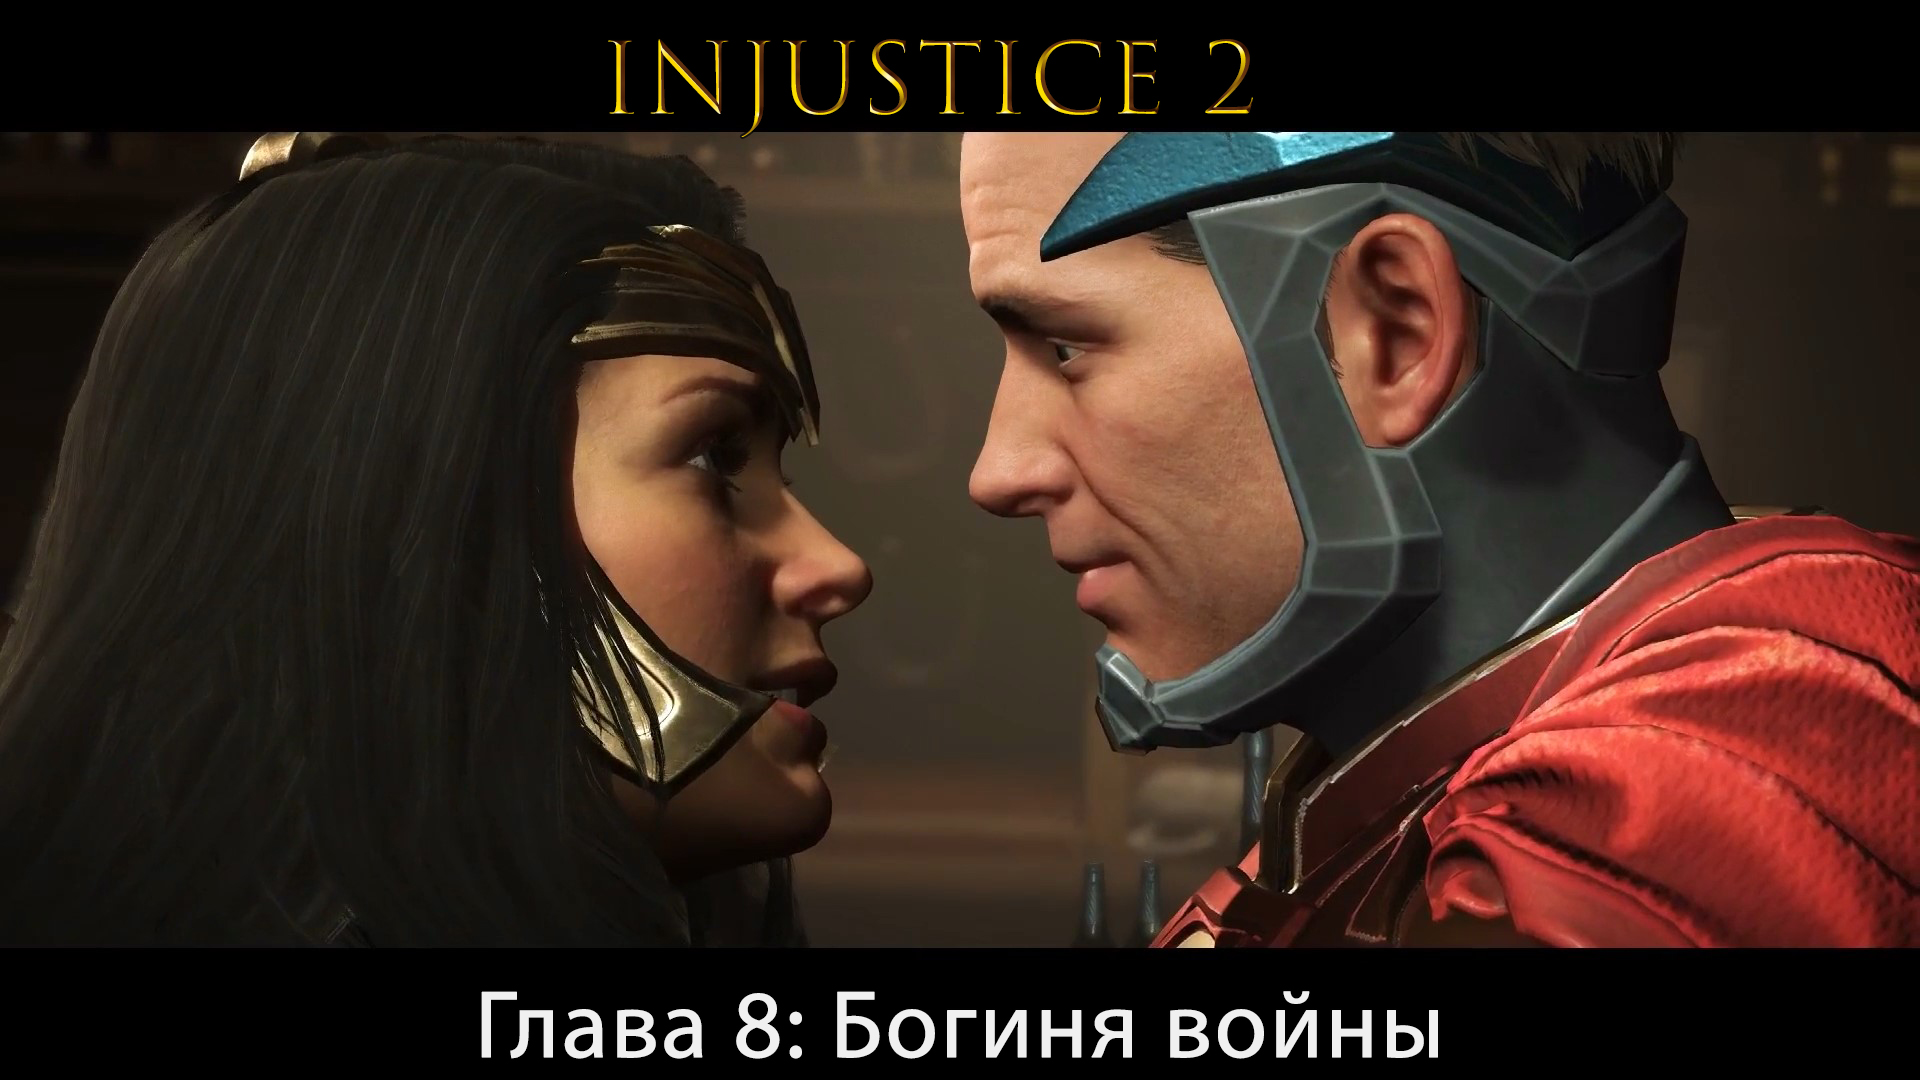 Injustice 2 - Глава 8: Богиня войны - Чудо-Женщина (Сюжет) (Gameplay)